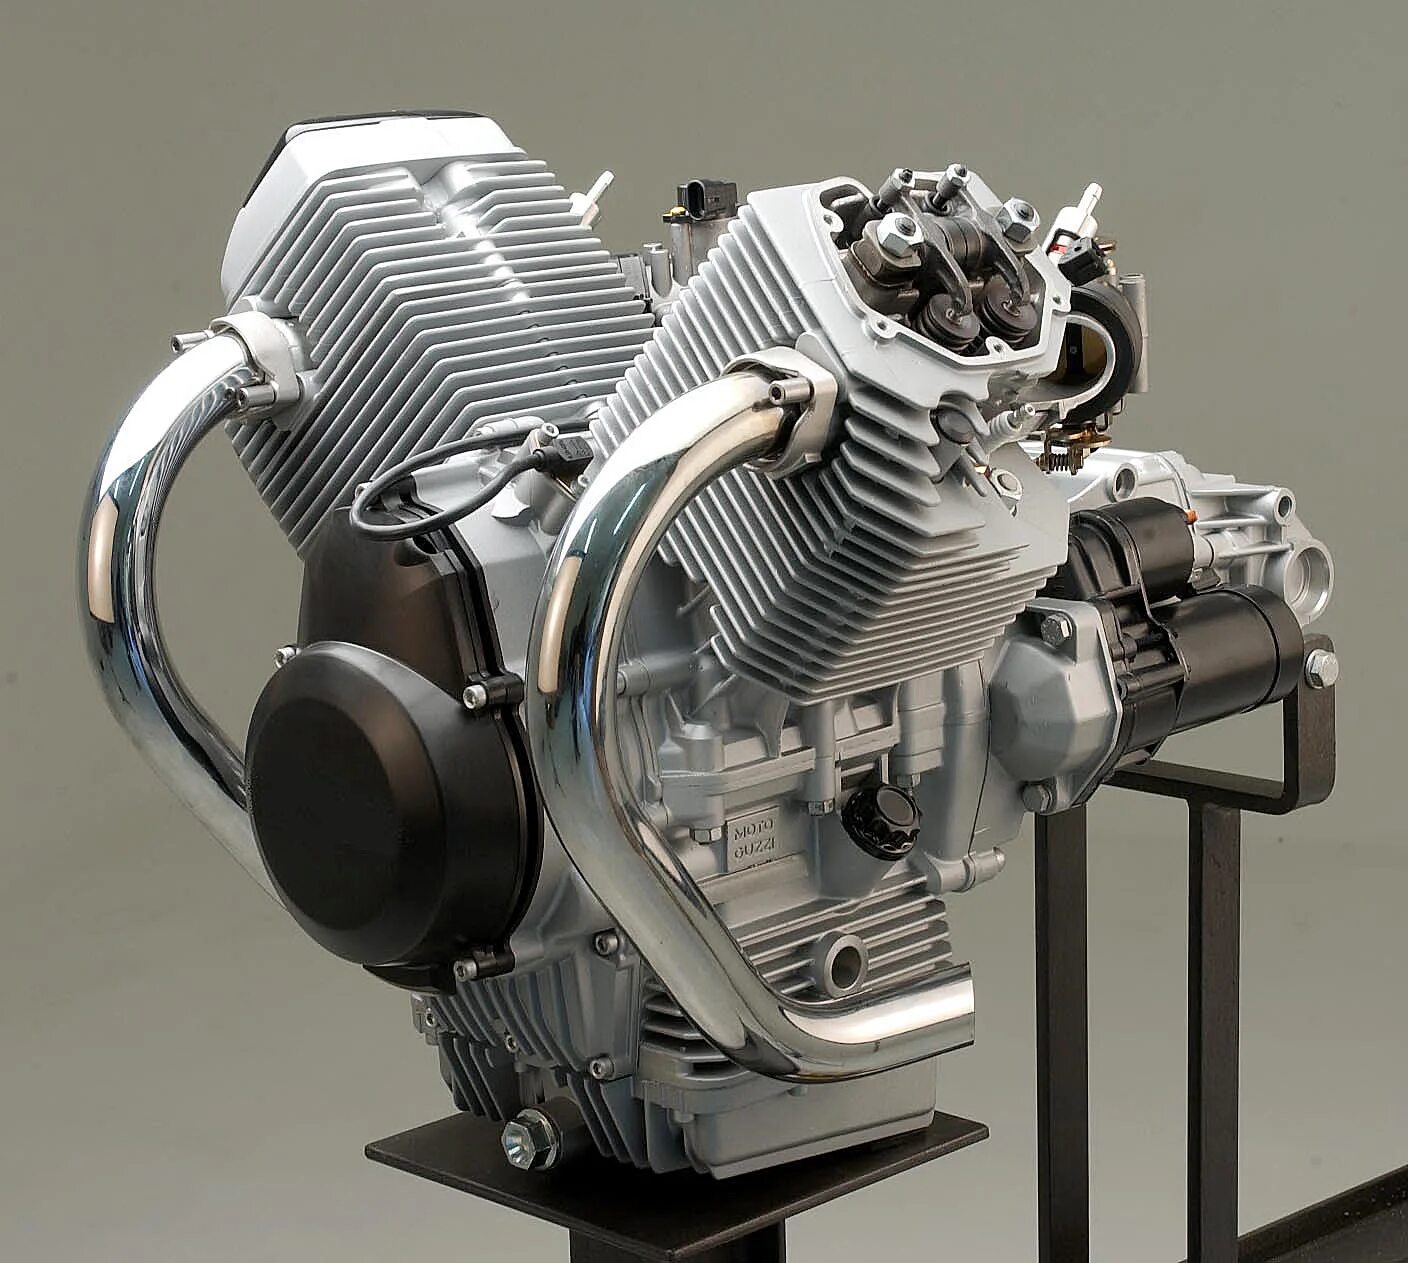 Купить моторное для мотоцикла. Moto Guzzi 750 двигатель. Генератор Moto Guzzi Breva 750. Moto Guzzi двигатель. Двигатель мотоцикла Honda nf750.